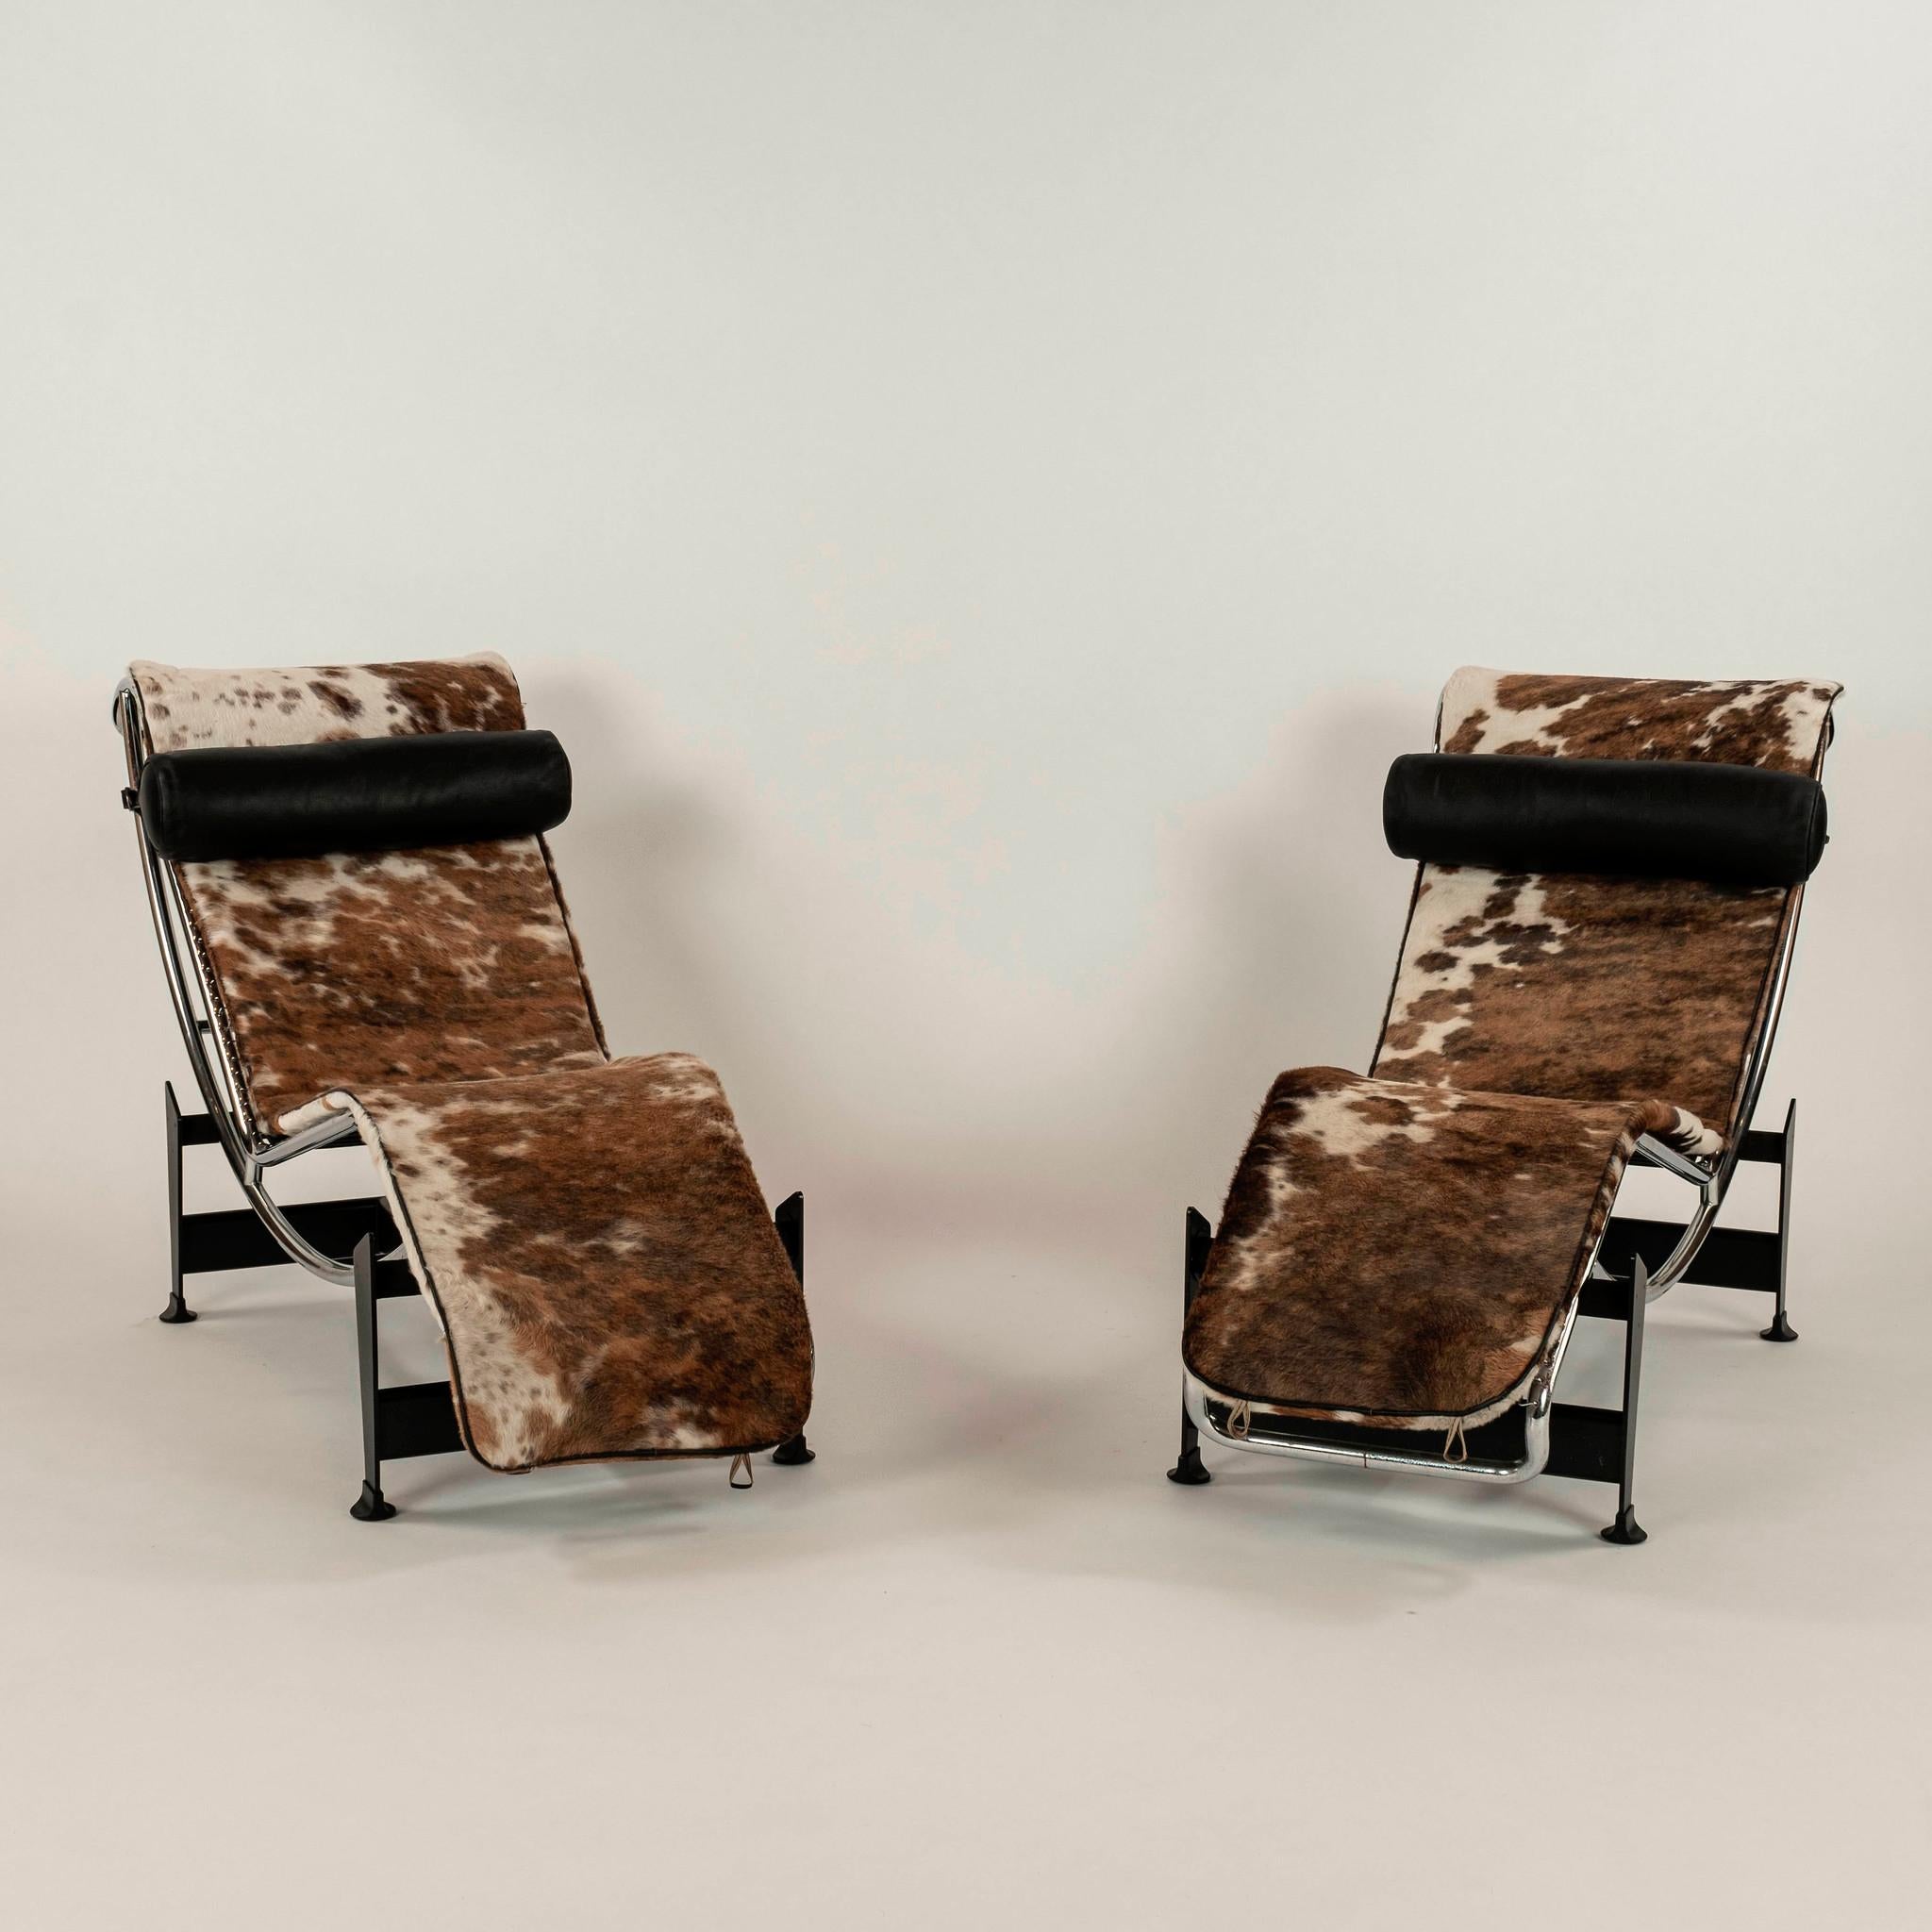 Chaise vintage en peau de vache chromée. Deux disponibles.

La Chaise Longue LC4 (1928) incarne cette notion avec un cadre 